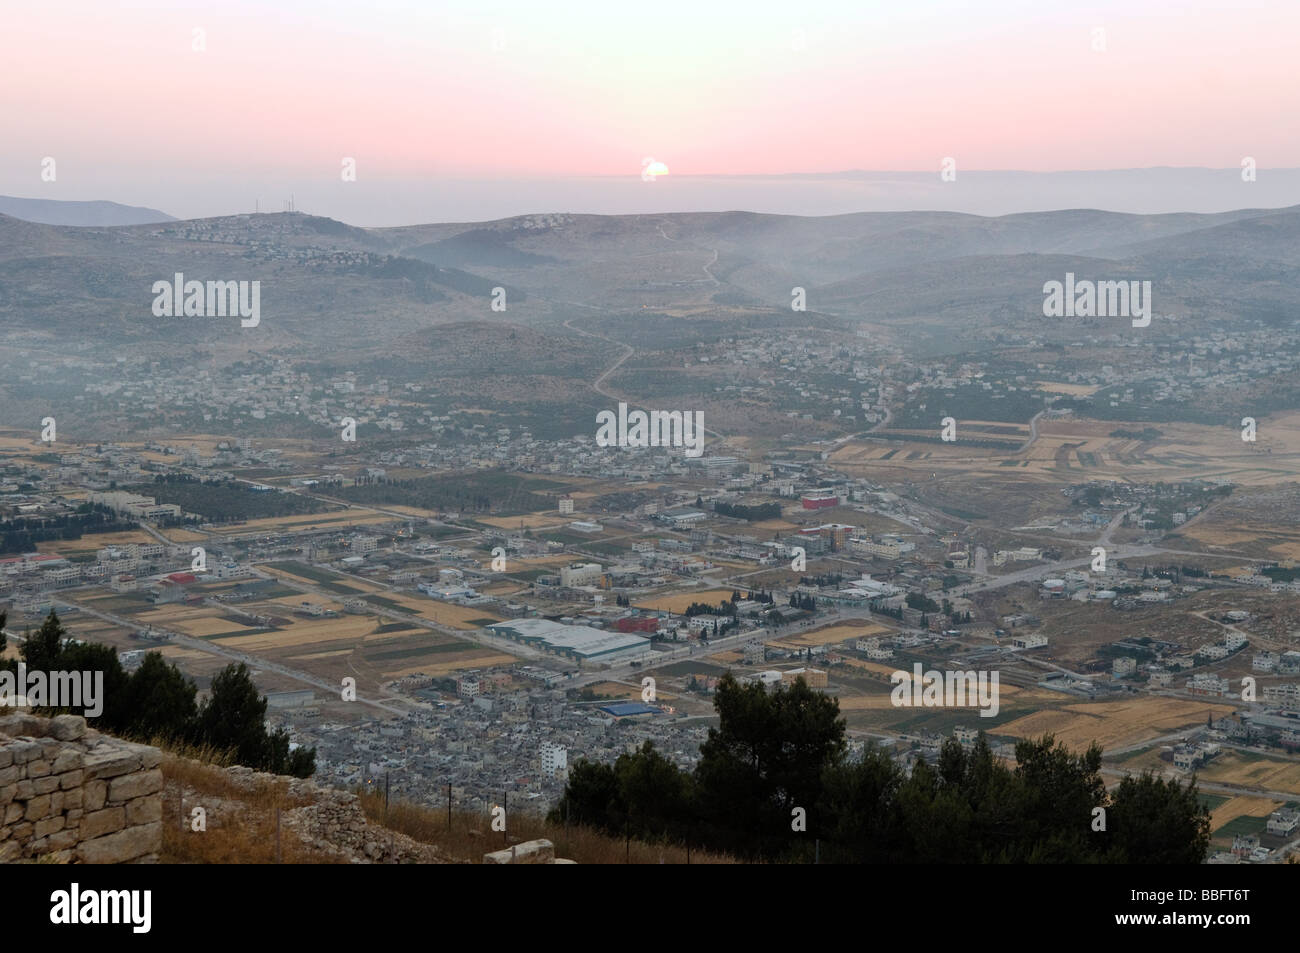 Lever du Soleil vue depuis le mont Garizim, à proximité immédiate de la ville de Cisjordanie d'Israël des territoires palestiniens de Naplouse Banque D'Images